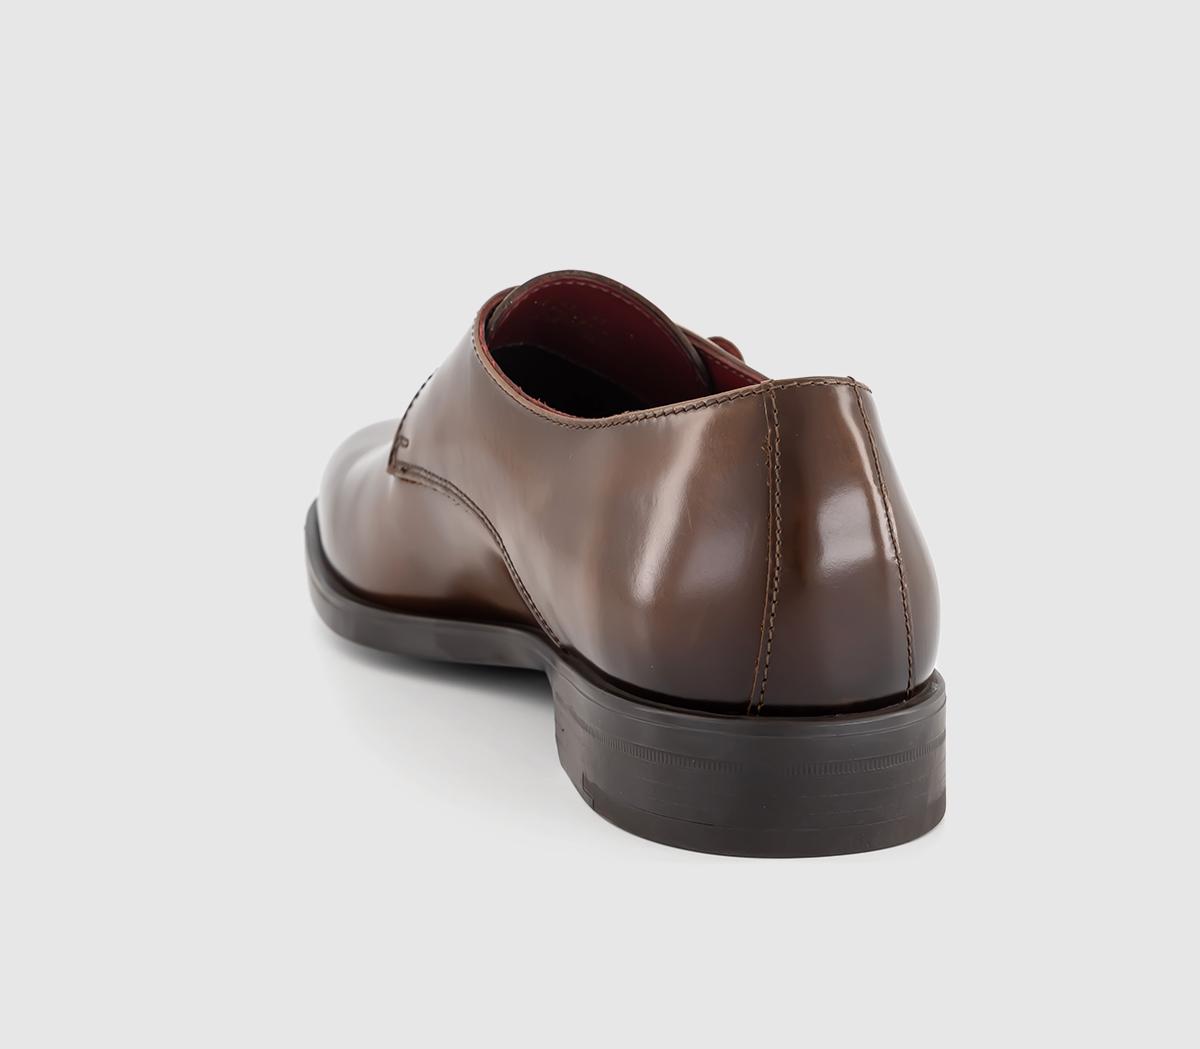 Poste Pierre Single Strap Monk Shoes Tan Leather - Men’s Smart Shoes